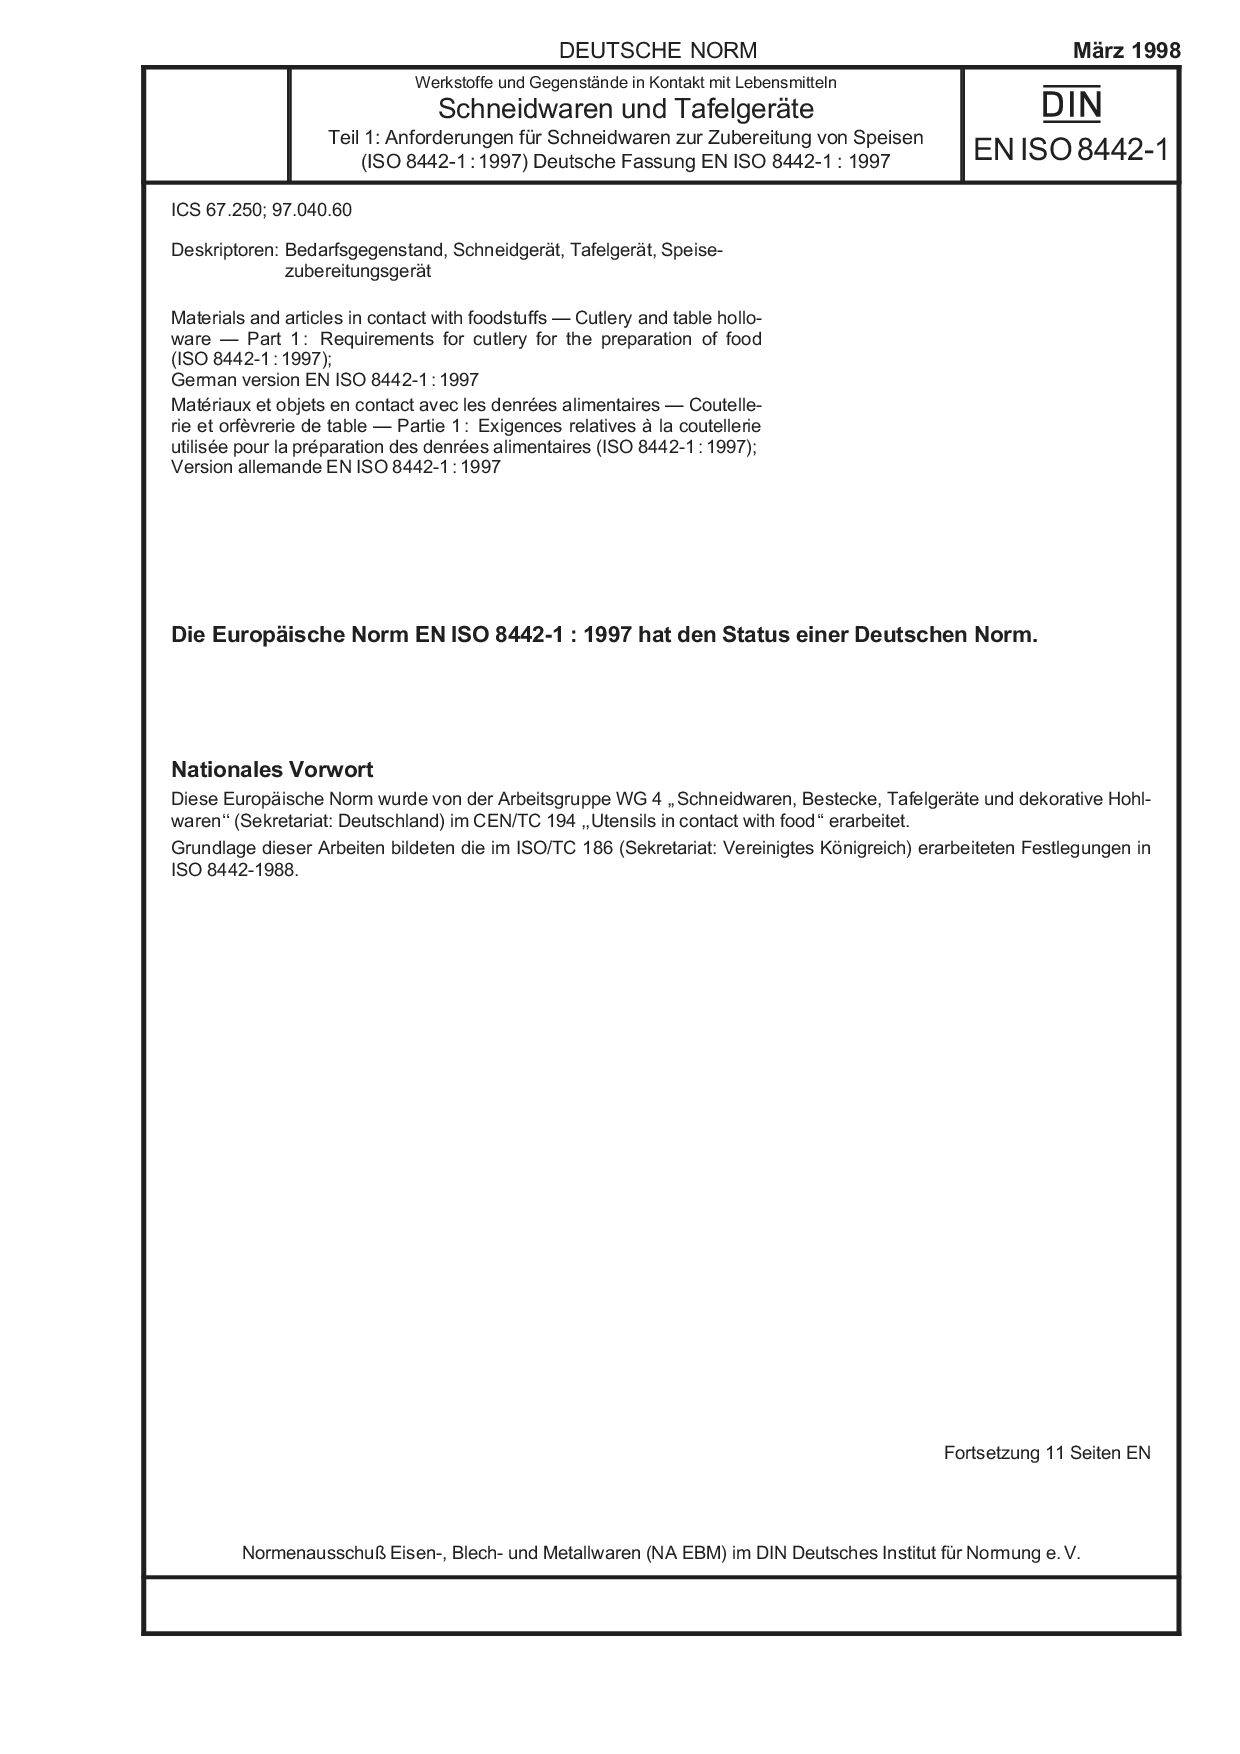 DIN EN ISO 8442-1:1998